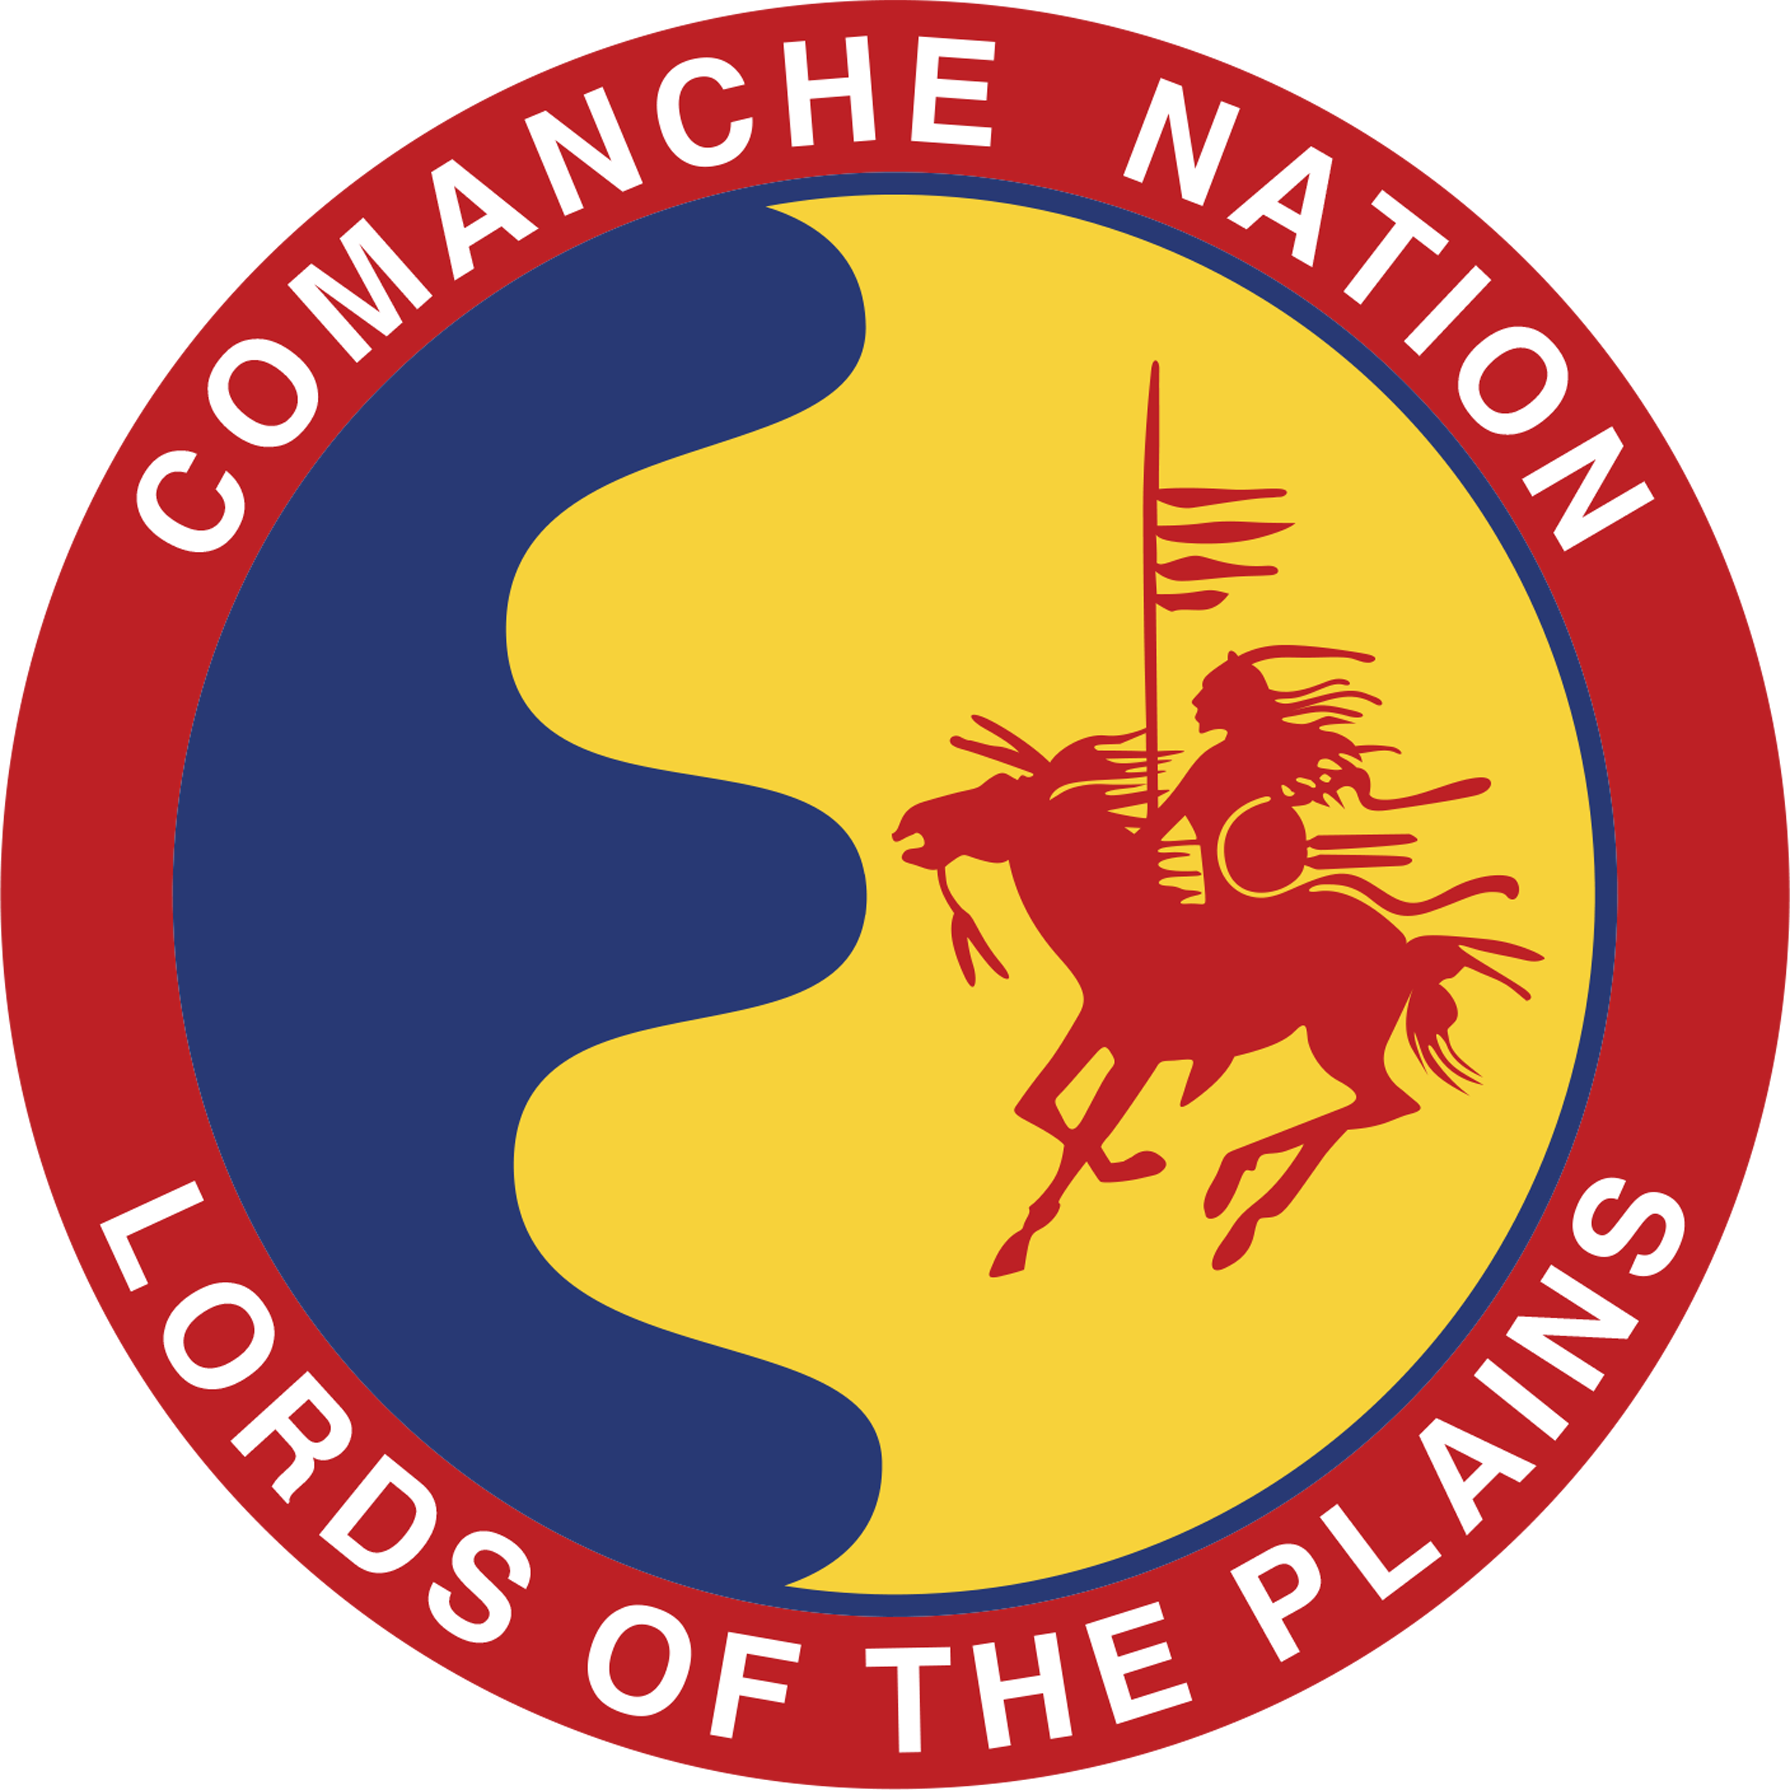 Comanche Nation College